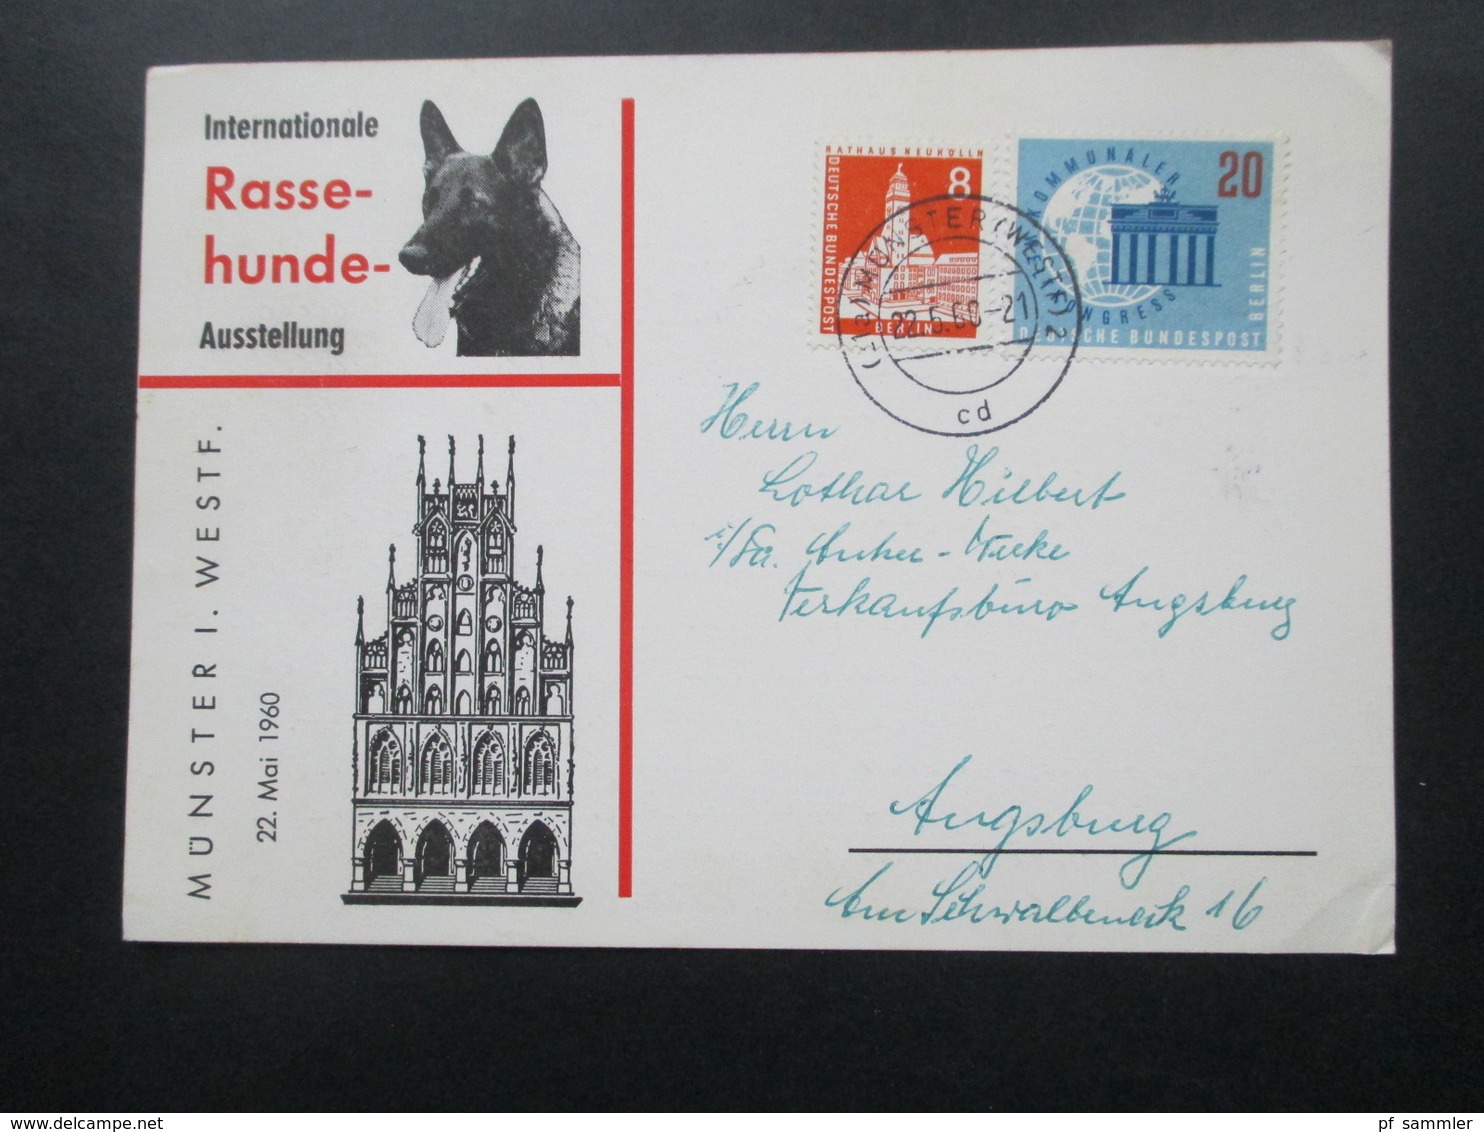 Sonderkarte Internationale Rasse Hunde Ausstellung Münster Westfalen Mit Berlin Marken! Nach Ausgburg Gesendet / Bedarf - Lettres & Documents